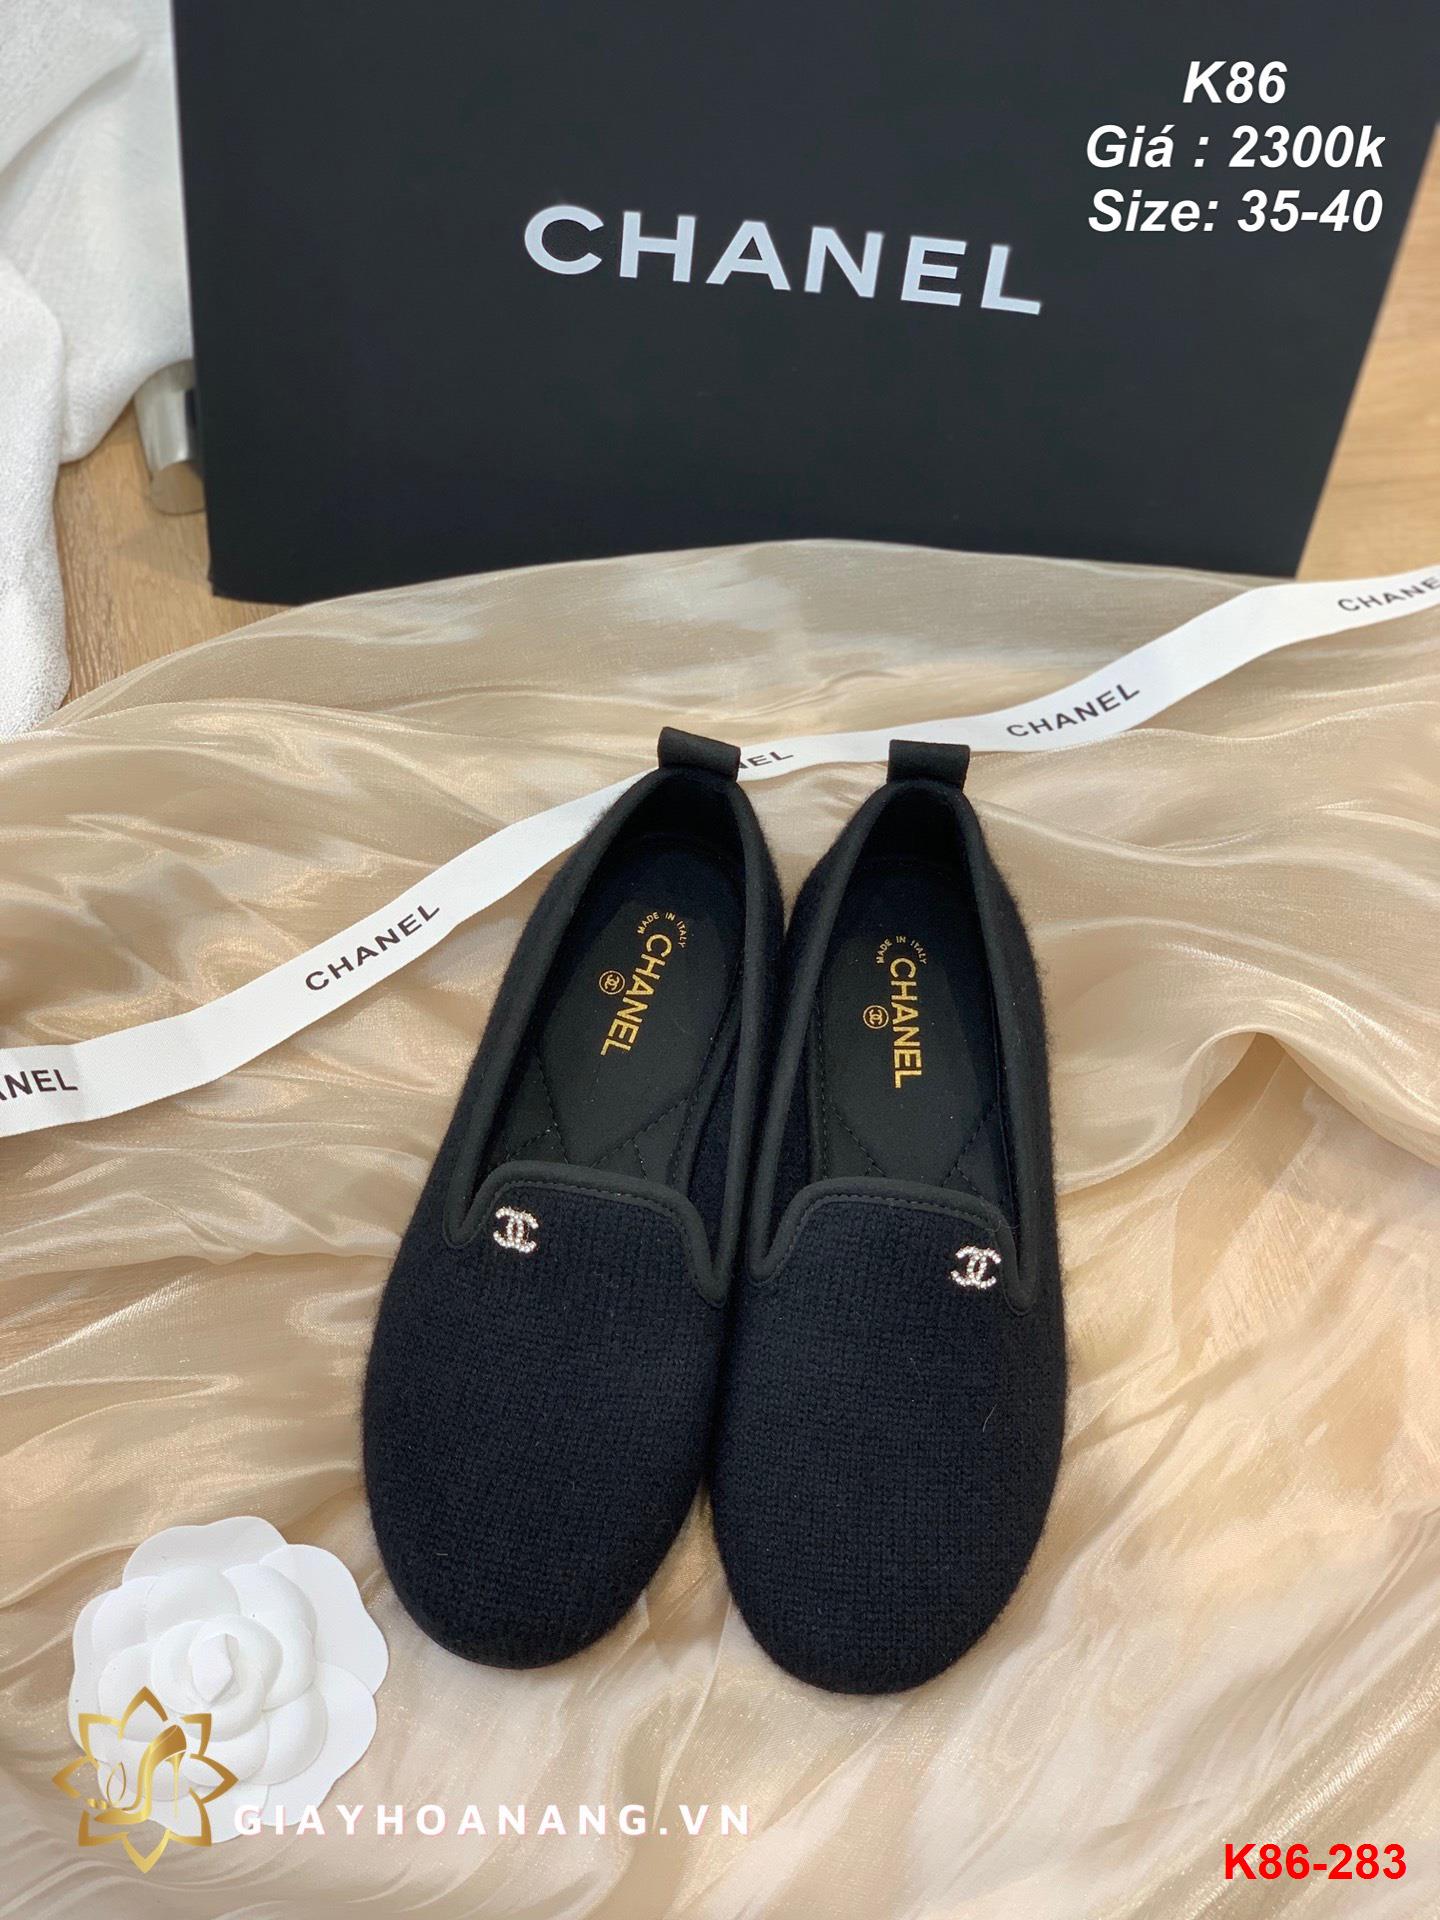 K86-283 Chanel giày lười siêu cấp